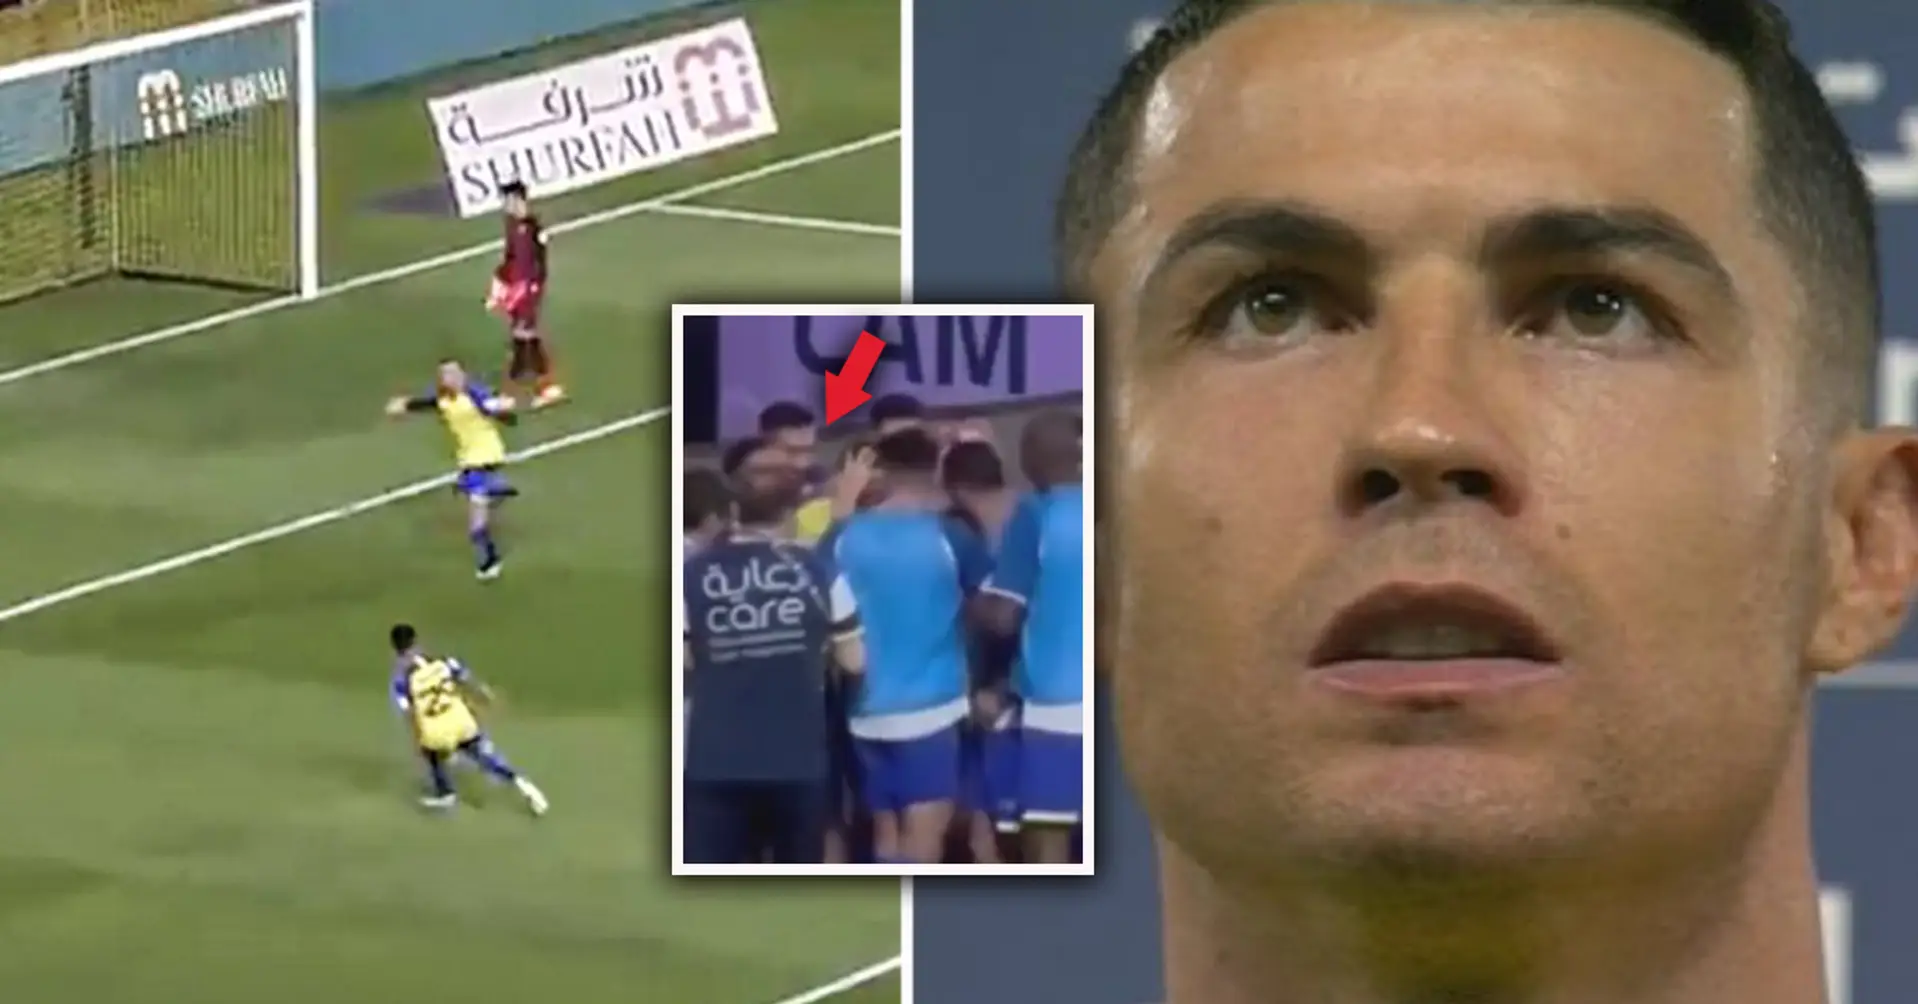 Aber das kam unerwartet: Die Kamera hat eingefangen, wie Cristiano Ronaldo nach einem Tor Sudschūd macht - was ist das?